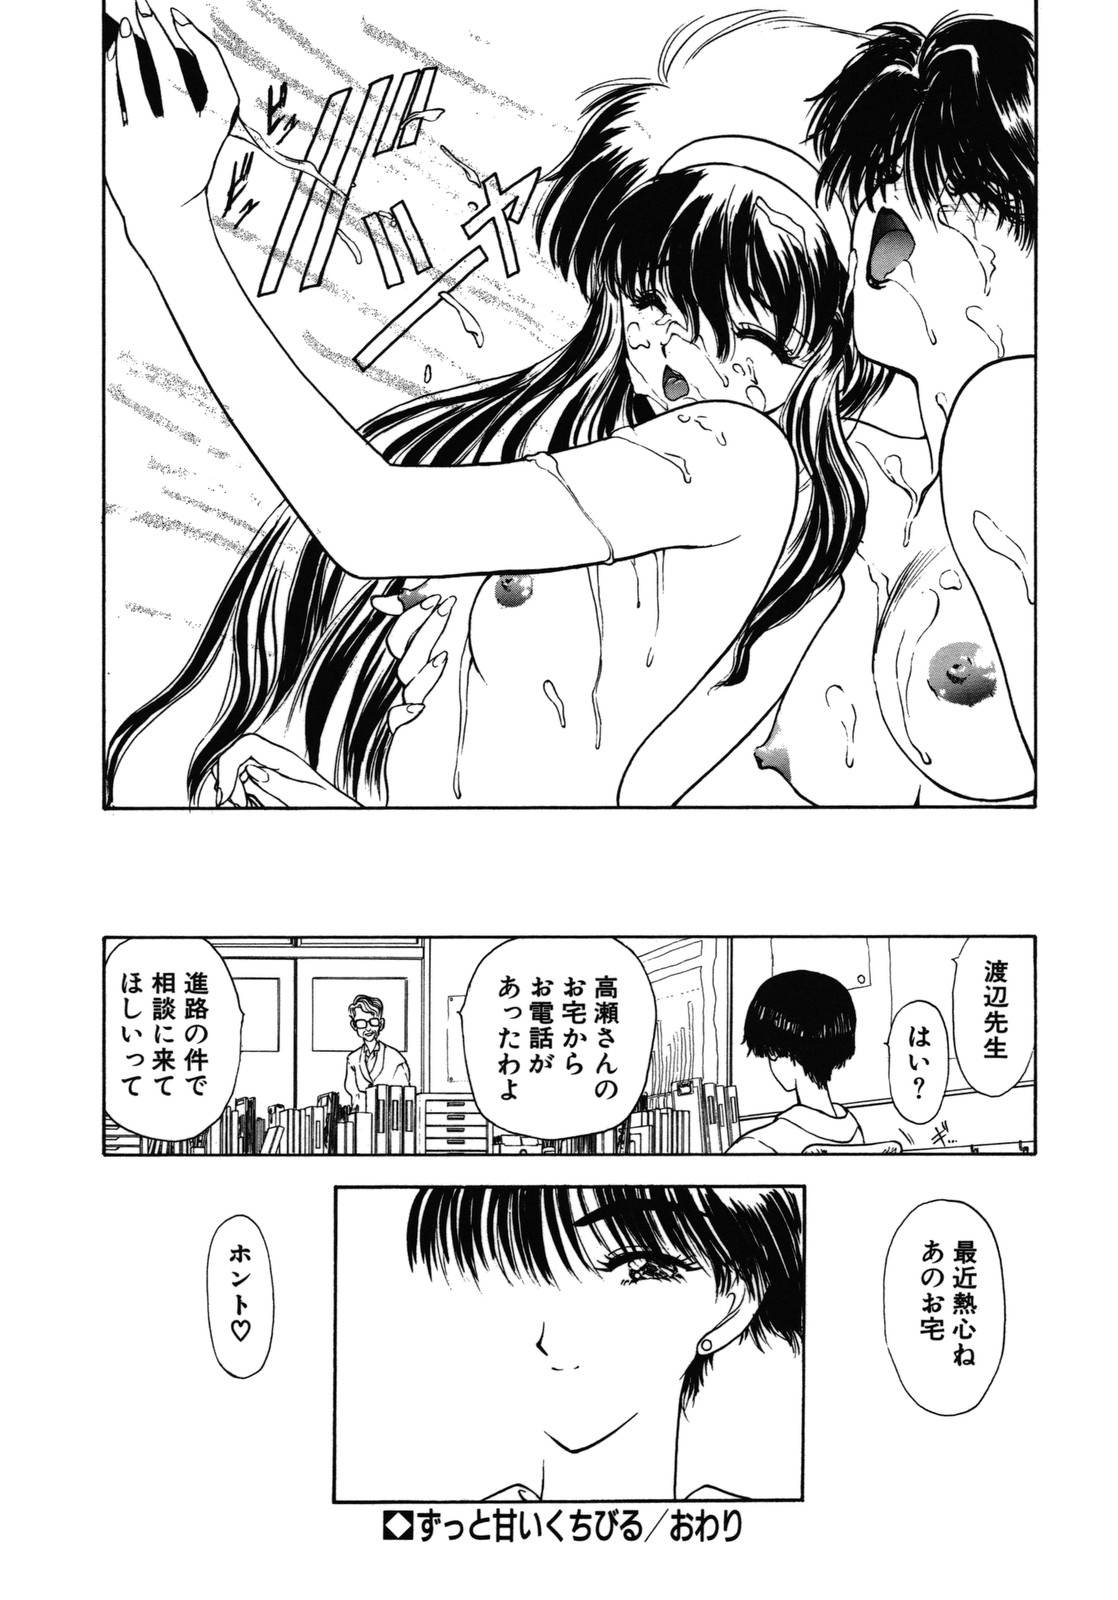 [Utatane Hiroyuki] COUNT DOWN page 49 full